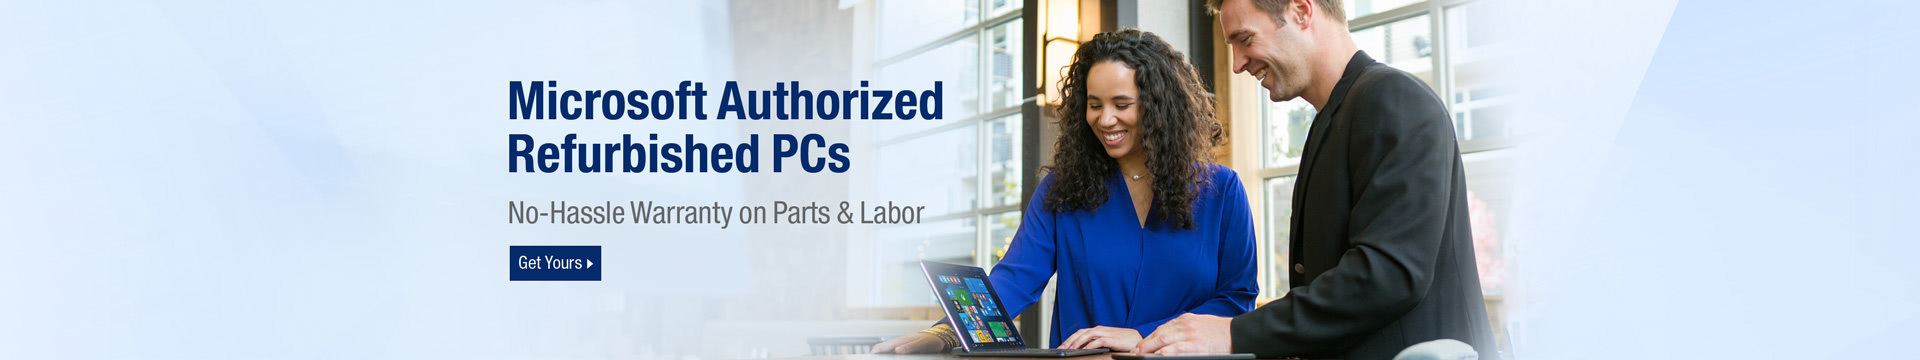 Microsoft authorized refurbished PCs